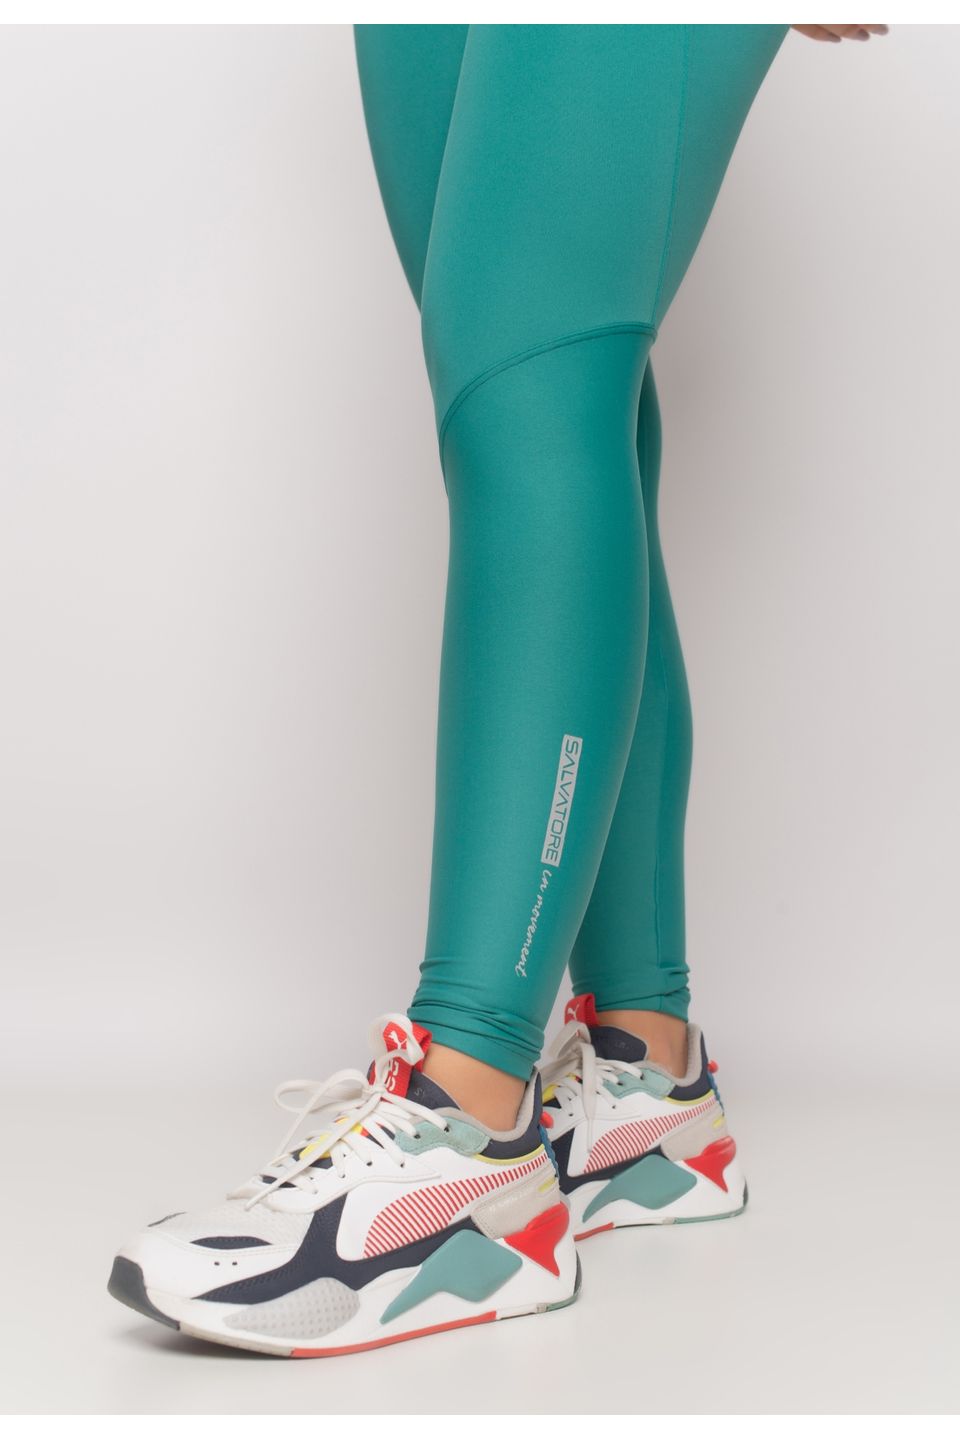 Calça Legging Fitness Poliamida Detalhe Em Recorte Miabr Alta Qualidade Não  é Transparente Colorida Cós – Sacoleiras Atacadão